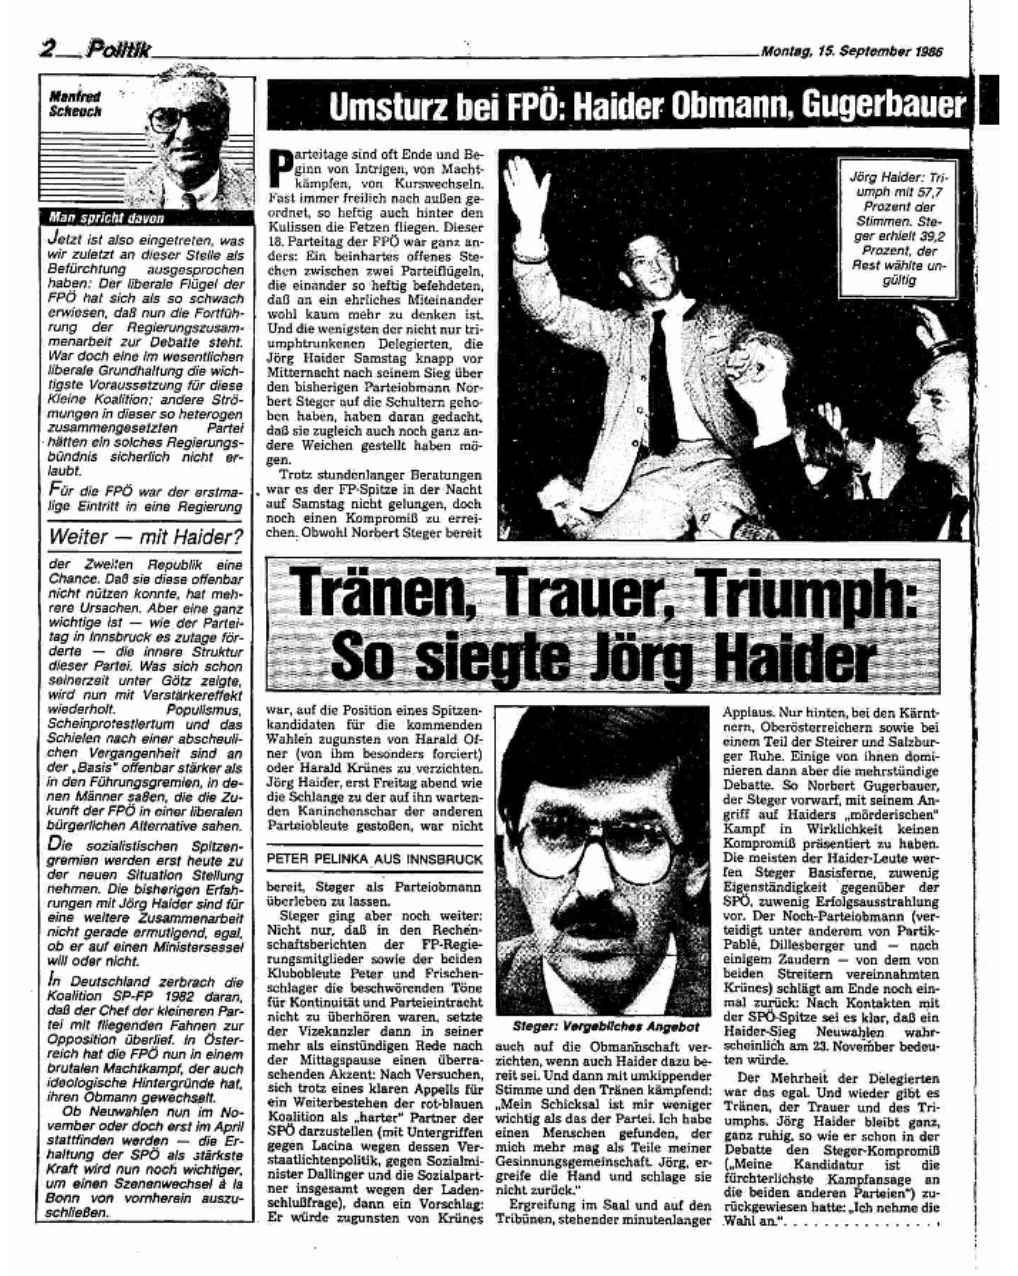 Arbeiter Zeitung 15.9.1986: "Tränen, Trauer, Triumph: So siegte Jörg Haider"